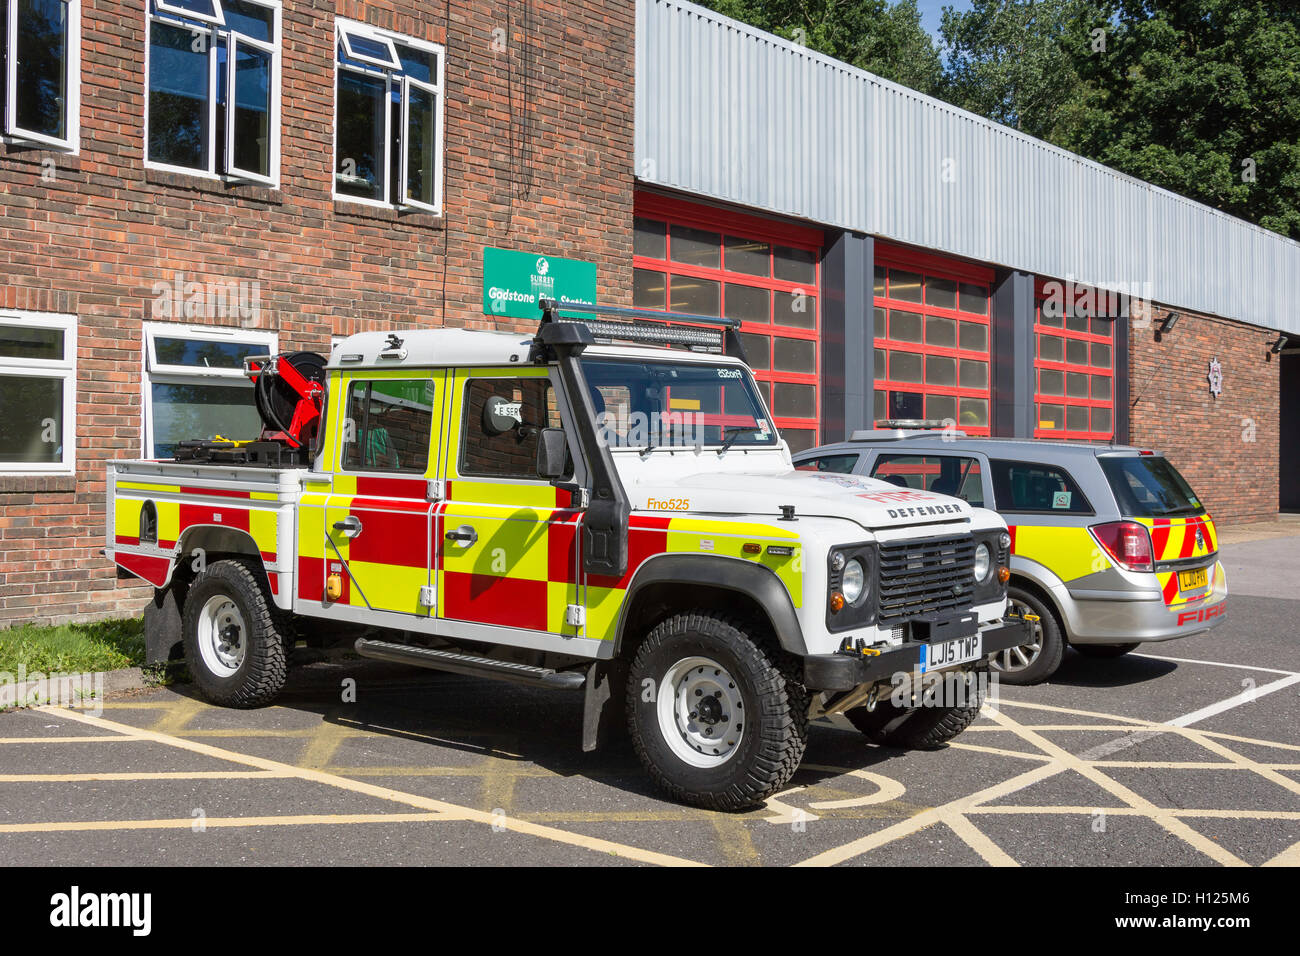 Fire vehicles outside Godstone Fire Station, Godstone, Surrey, England, United Kingdom Stock Photo